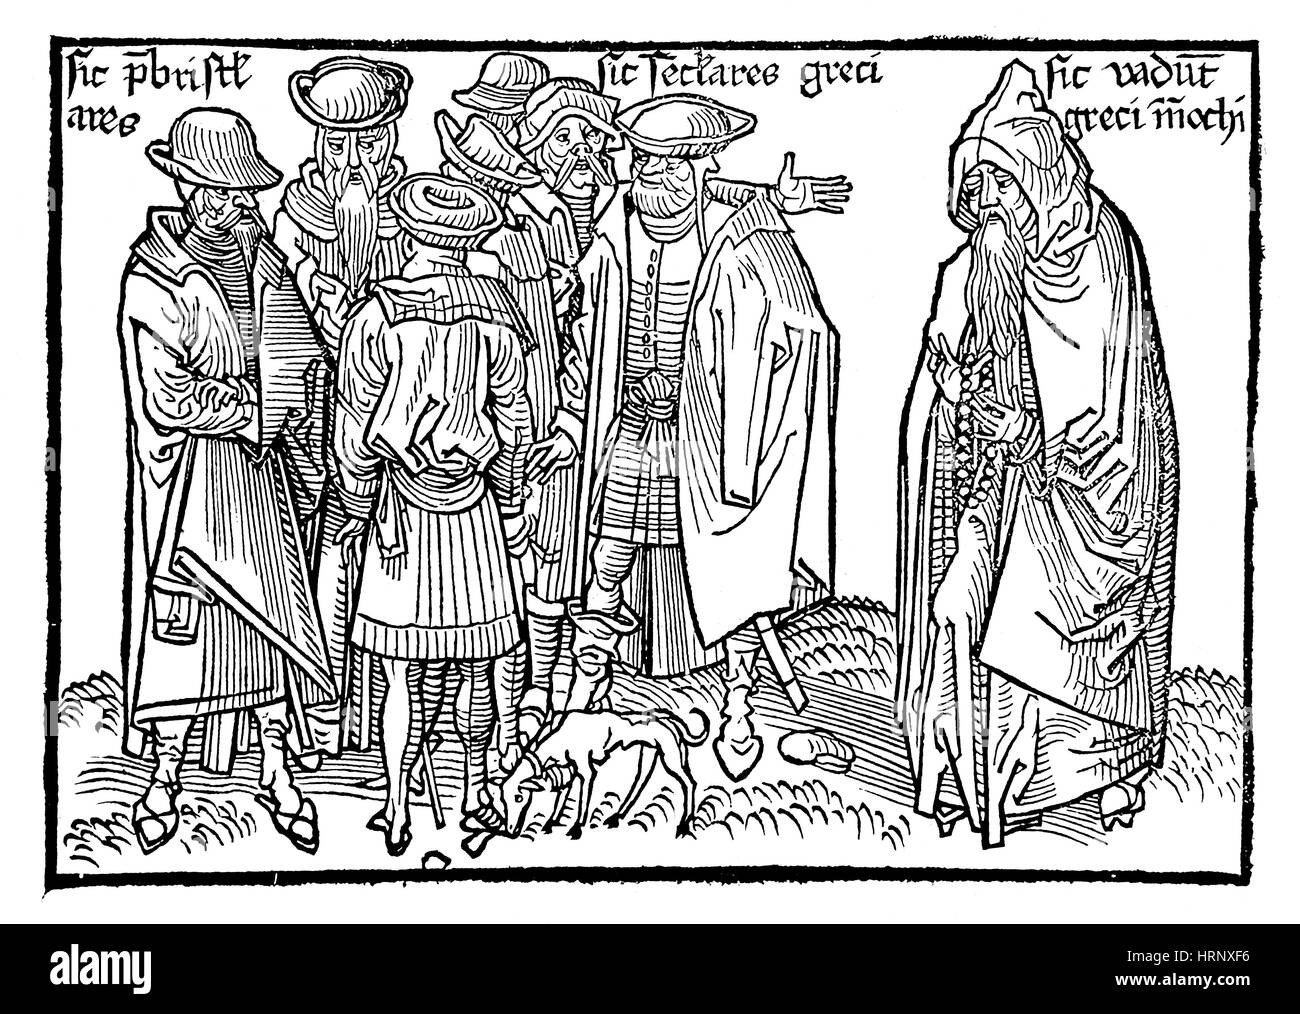 Sanctae Pereginationes, los griegos cristianos, 1486 Foto de stock